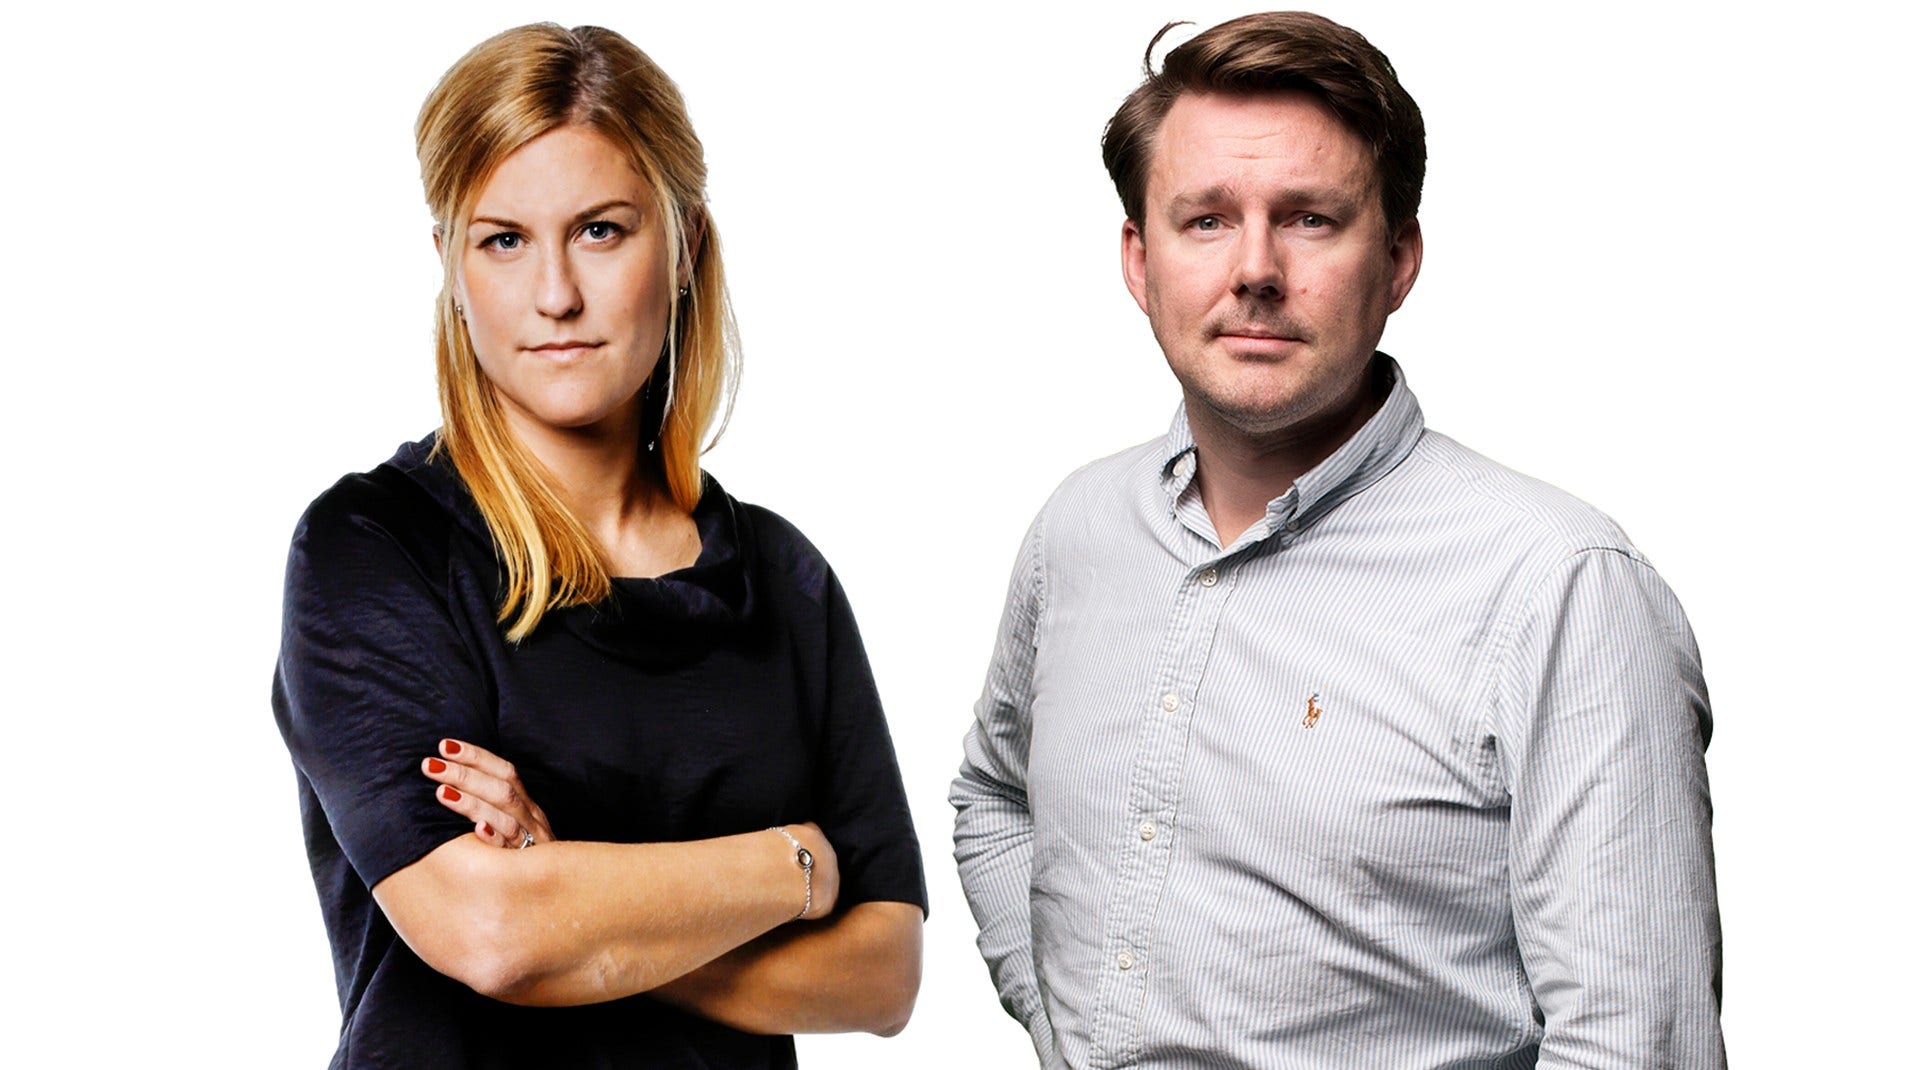 DN-journalisterna Josefin Sköld och Mattias Carlsson är nominerade till Guldspaden för sina avslöjanden.